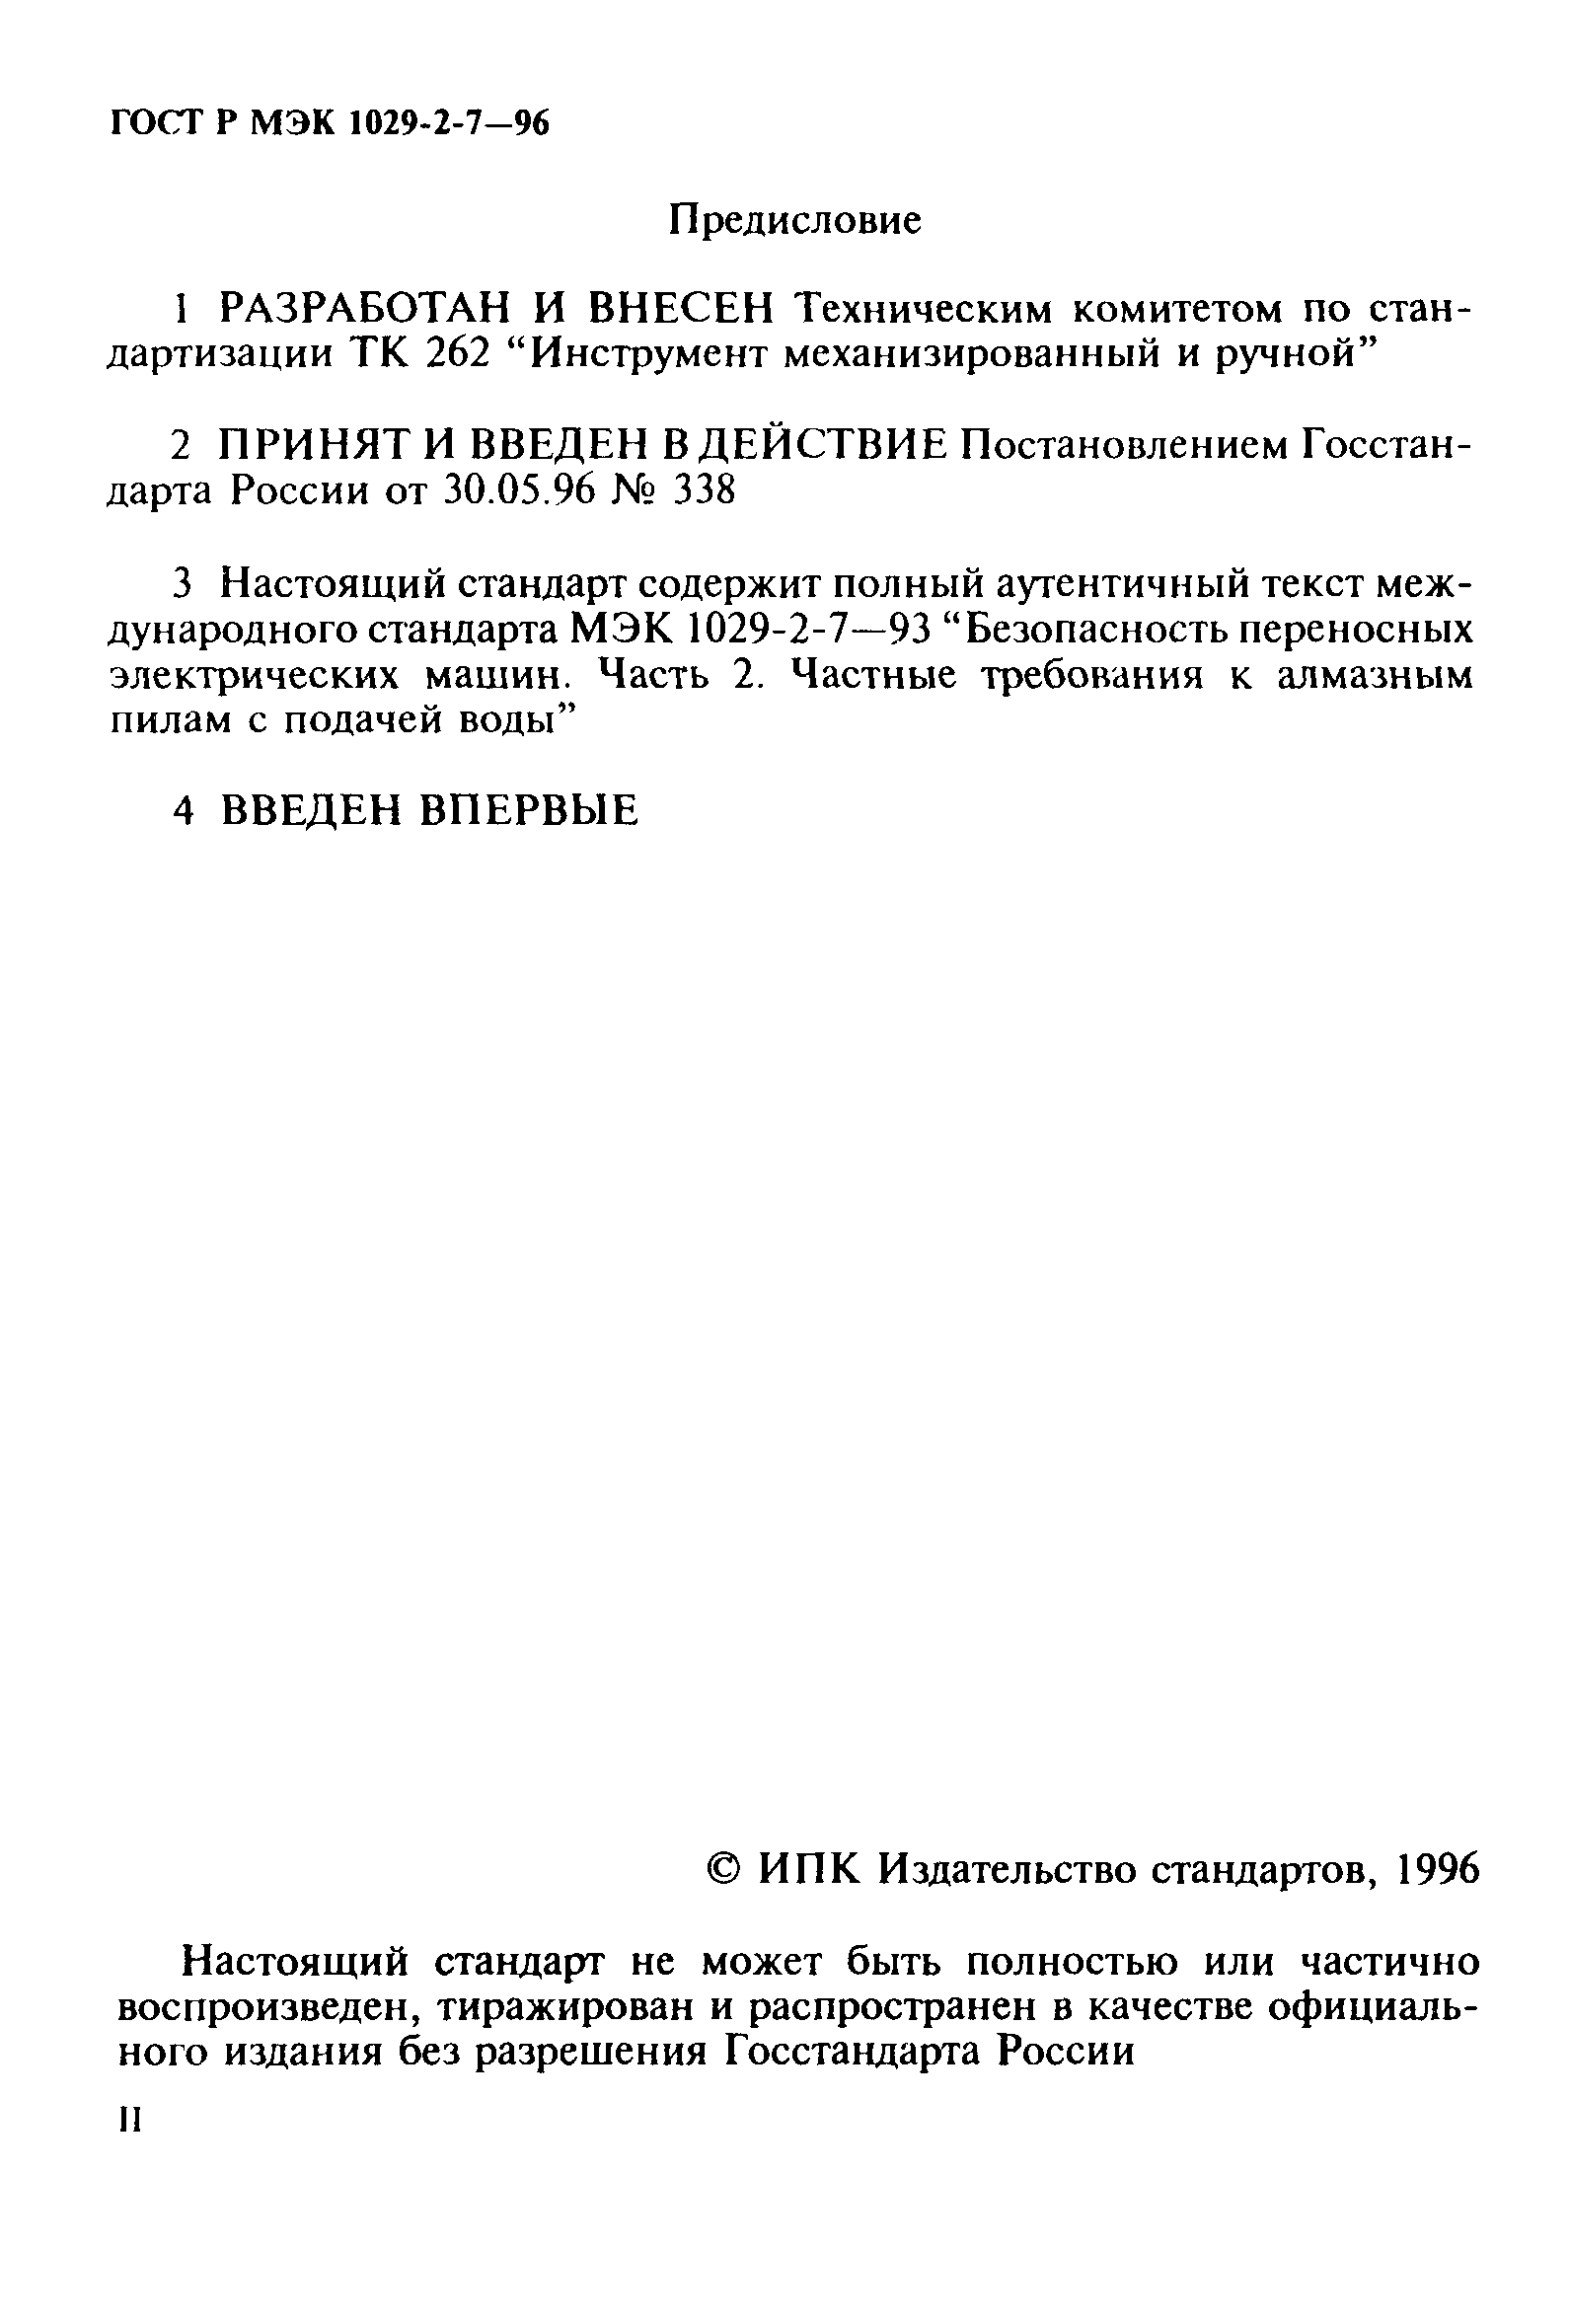 ГОСТ Р МЭК 1029-2-7-96